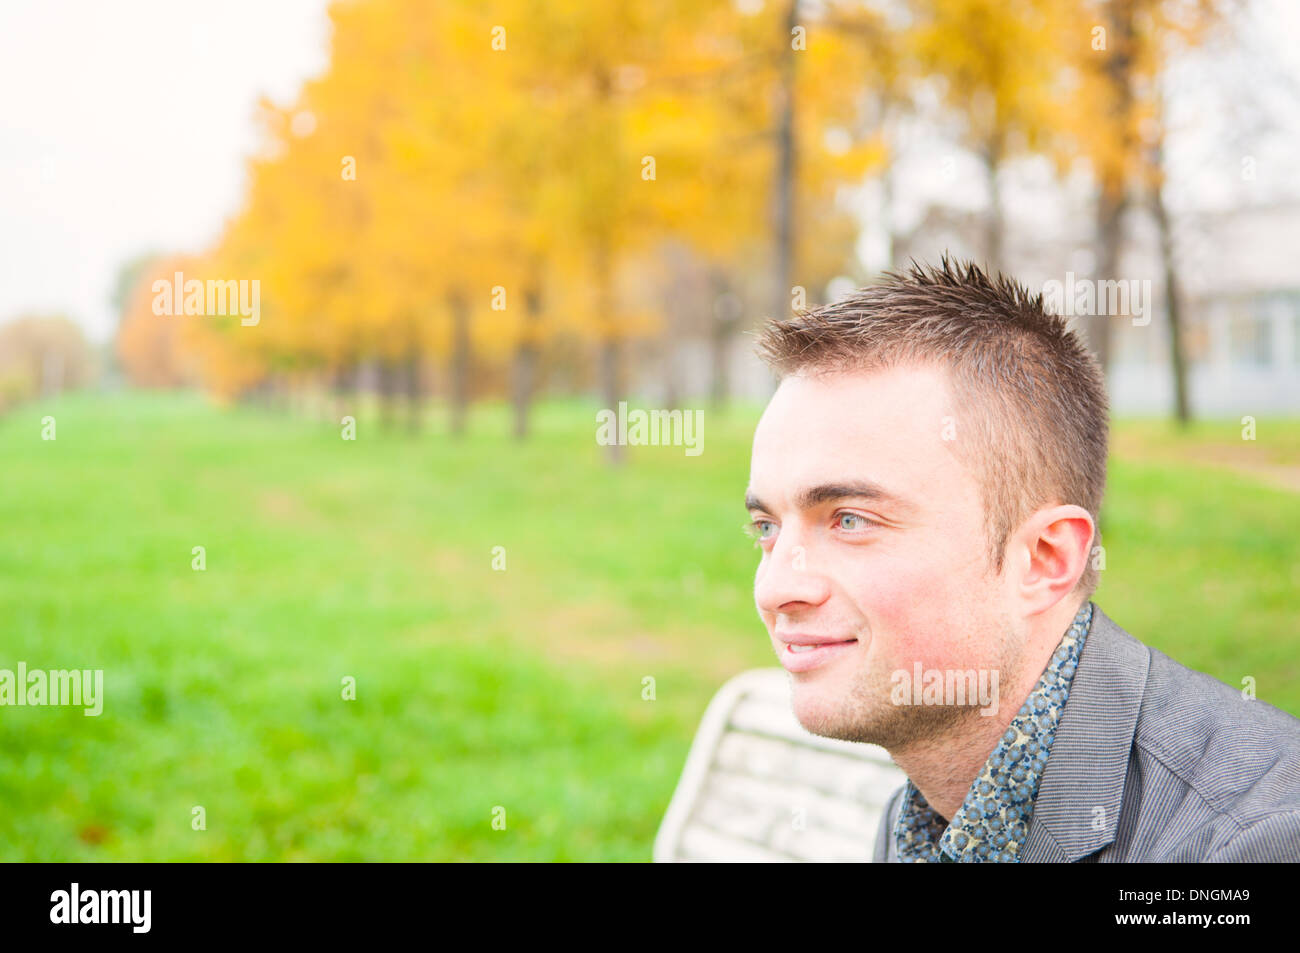 Portrait of young man in autumn park Banque D'Images